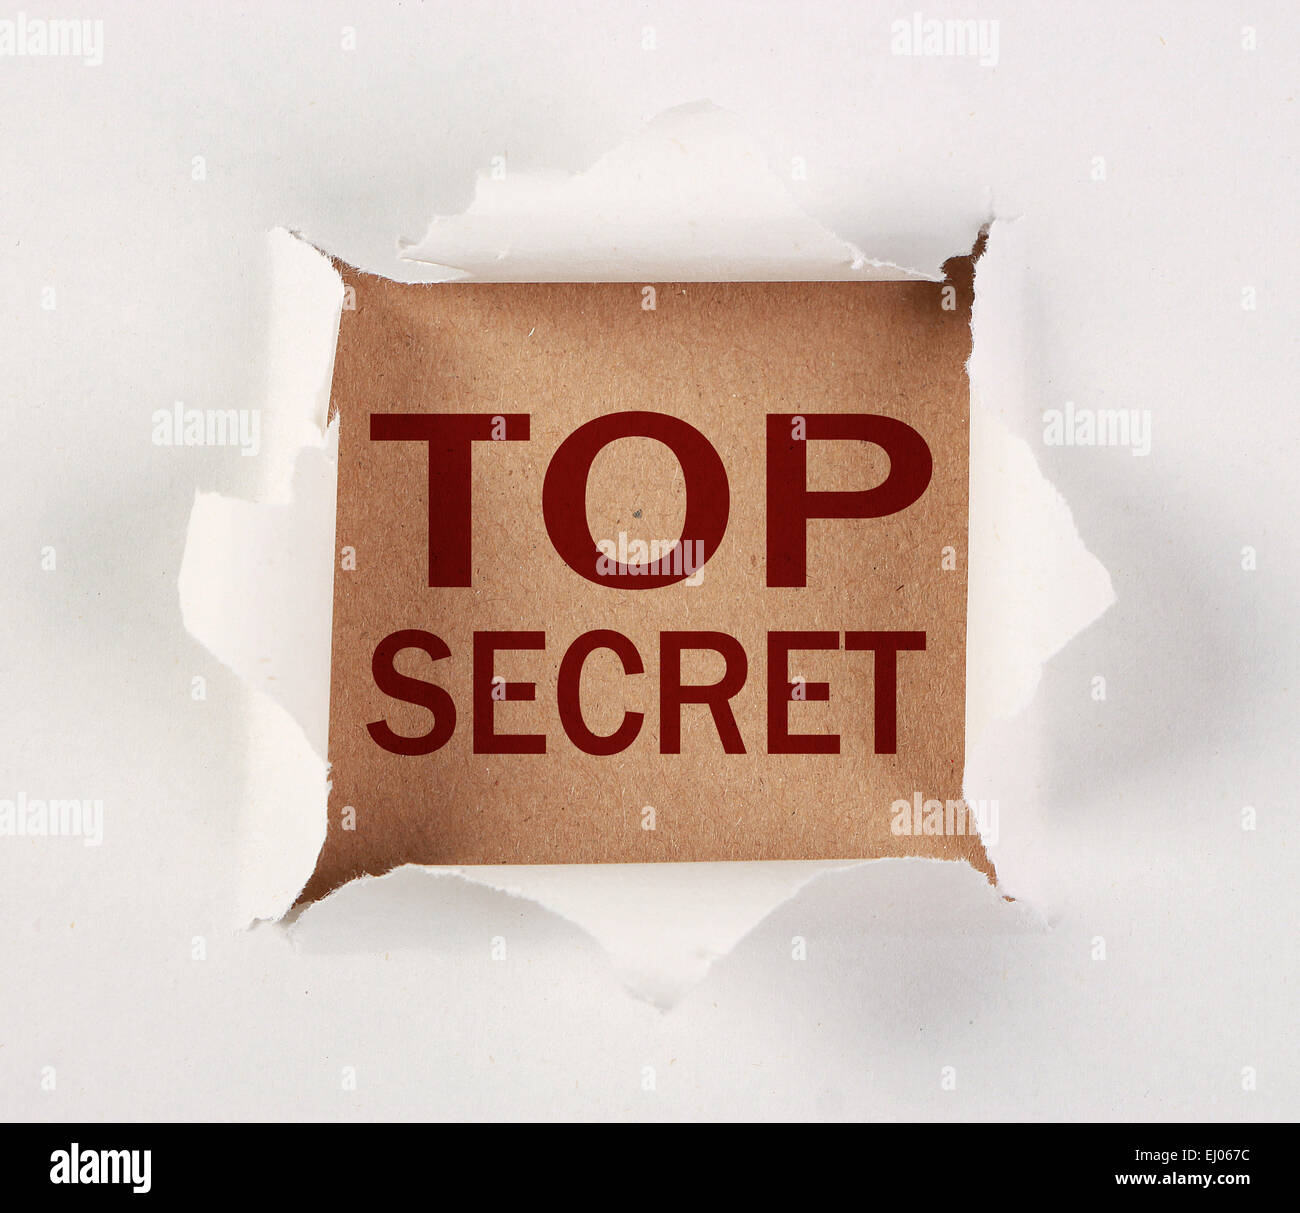 Top Secret con lágrimas en papel marrón. Foto de stock